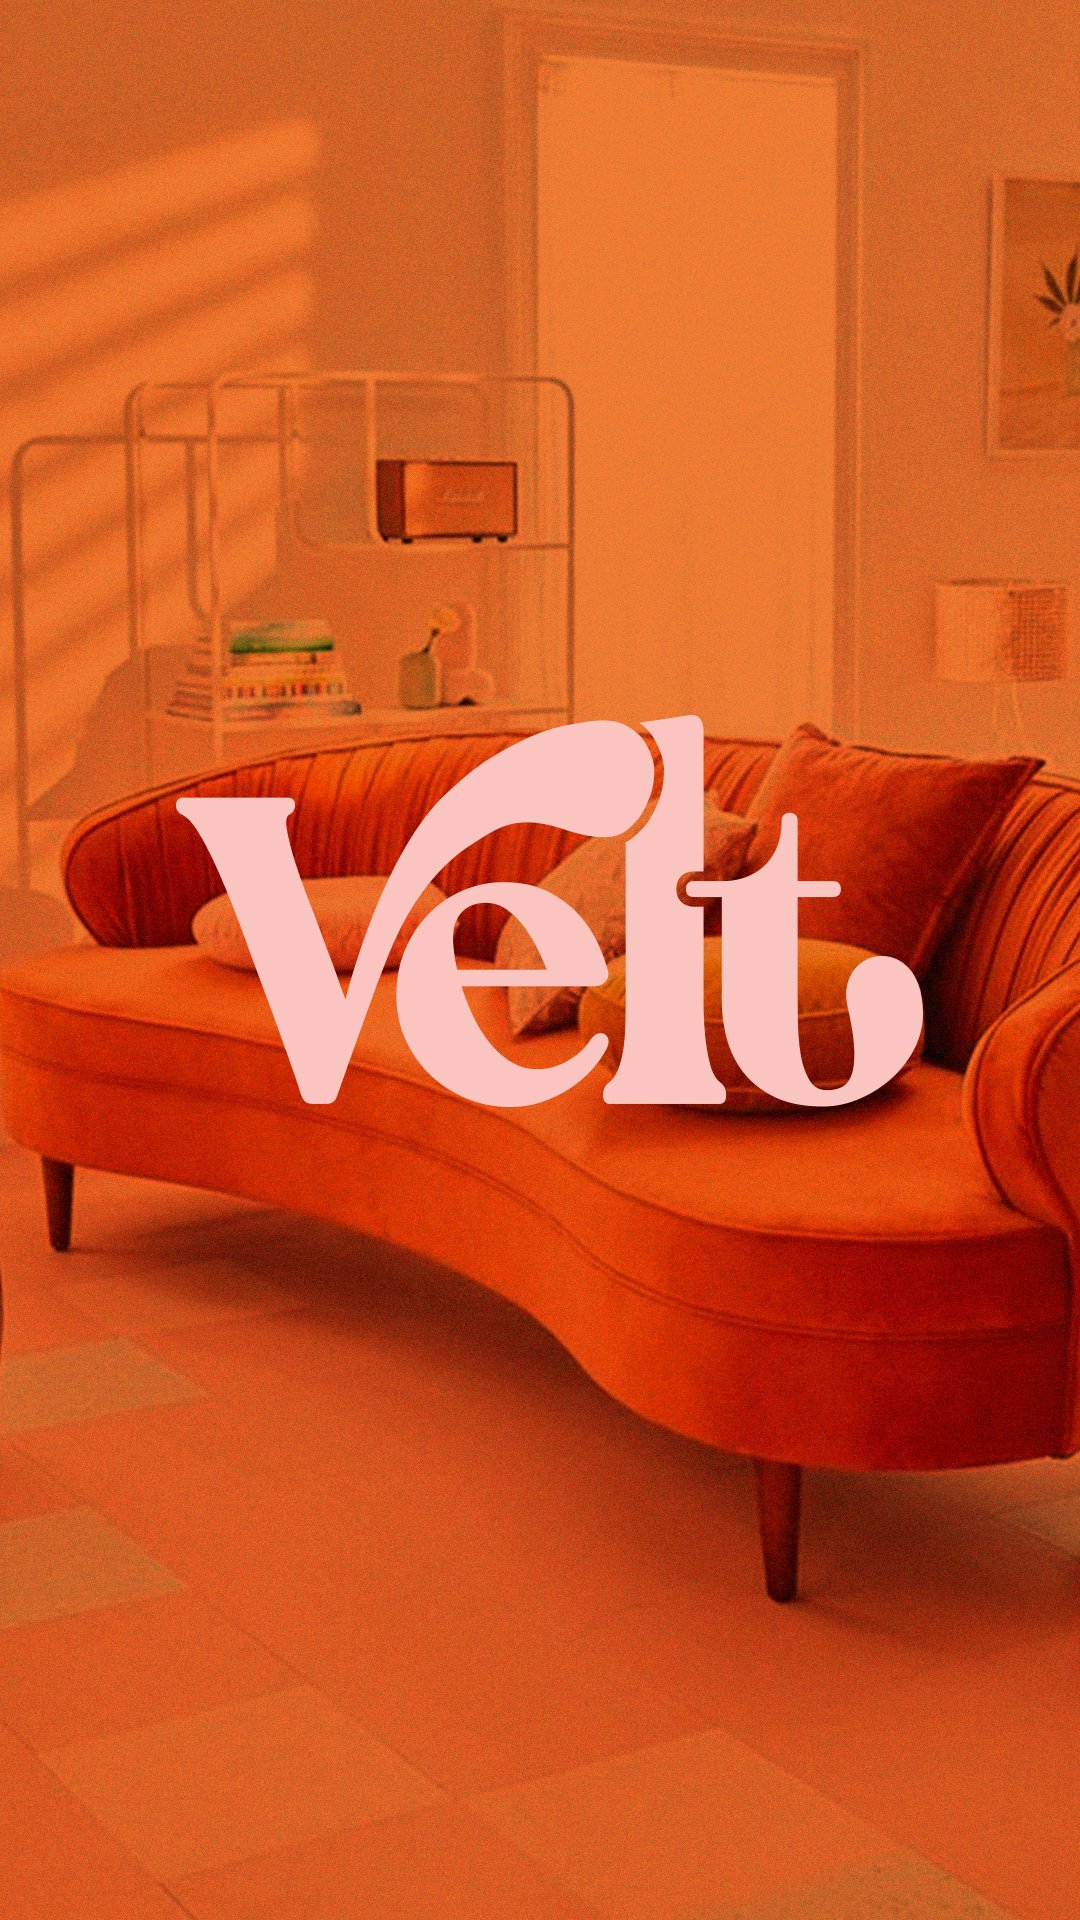 Velt-beauty logo design-2.jpg